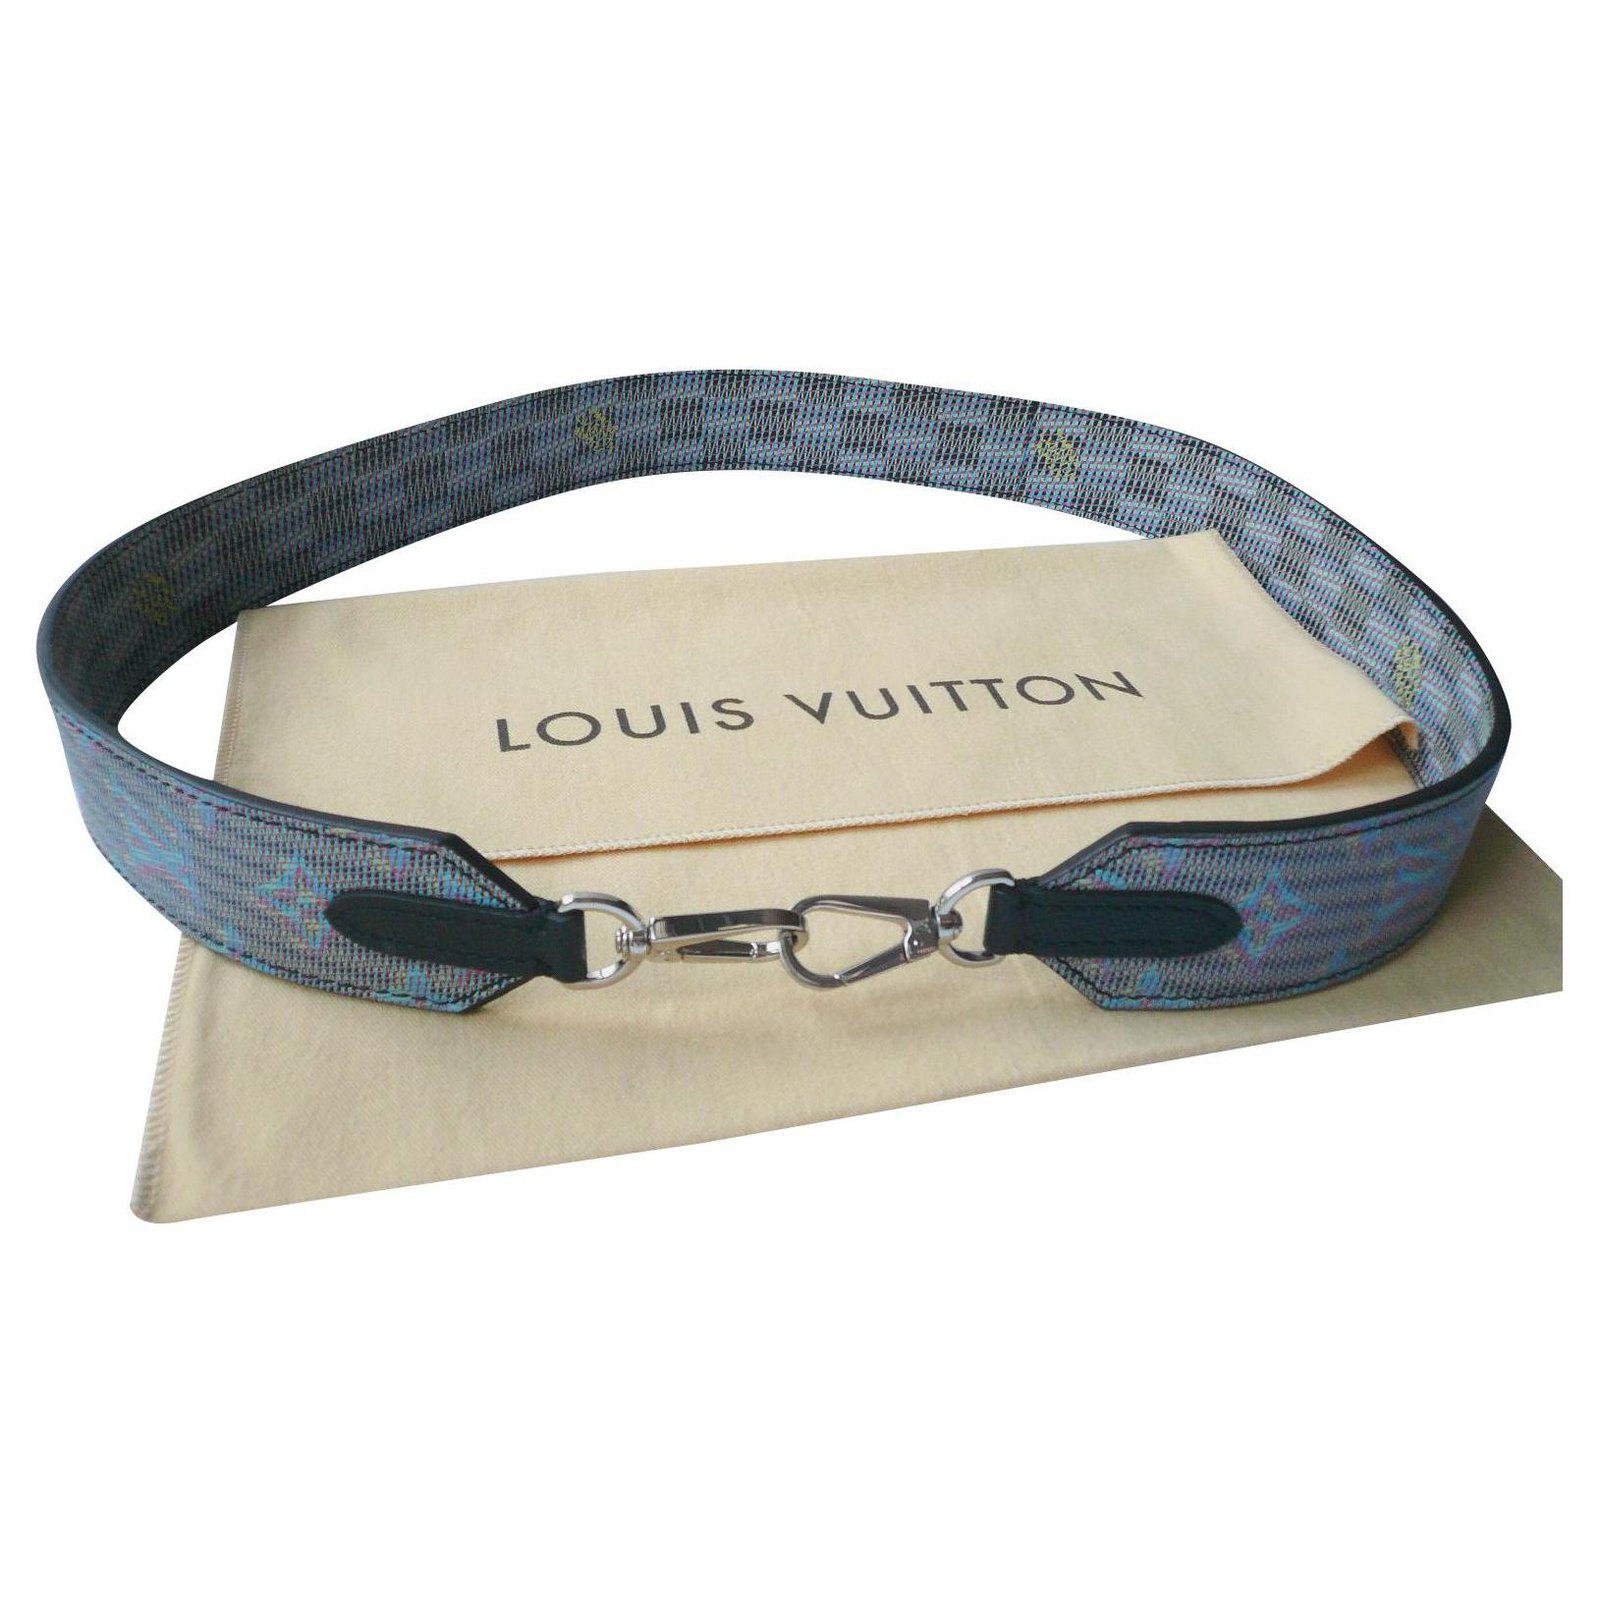 LOUIS VUITTON - New Monogram LV POP leather bag handle Blue Cloth